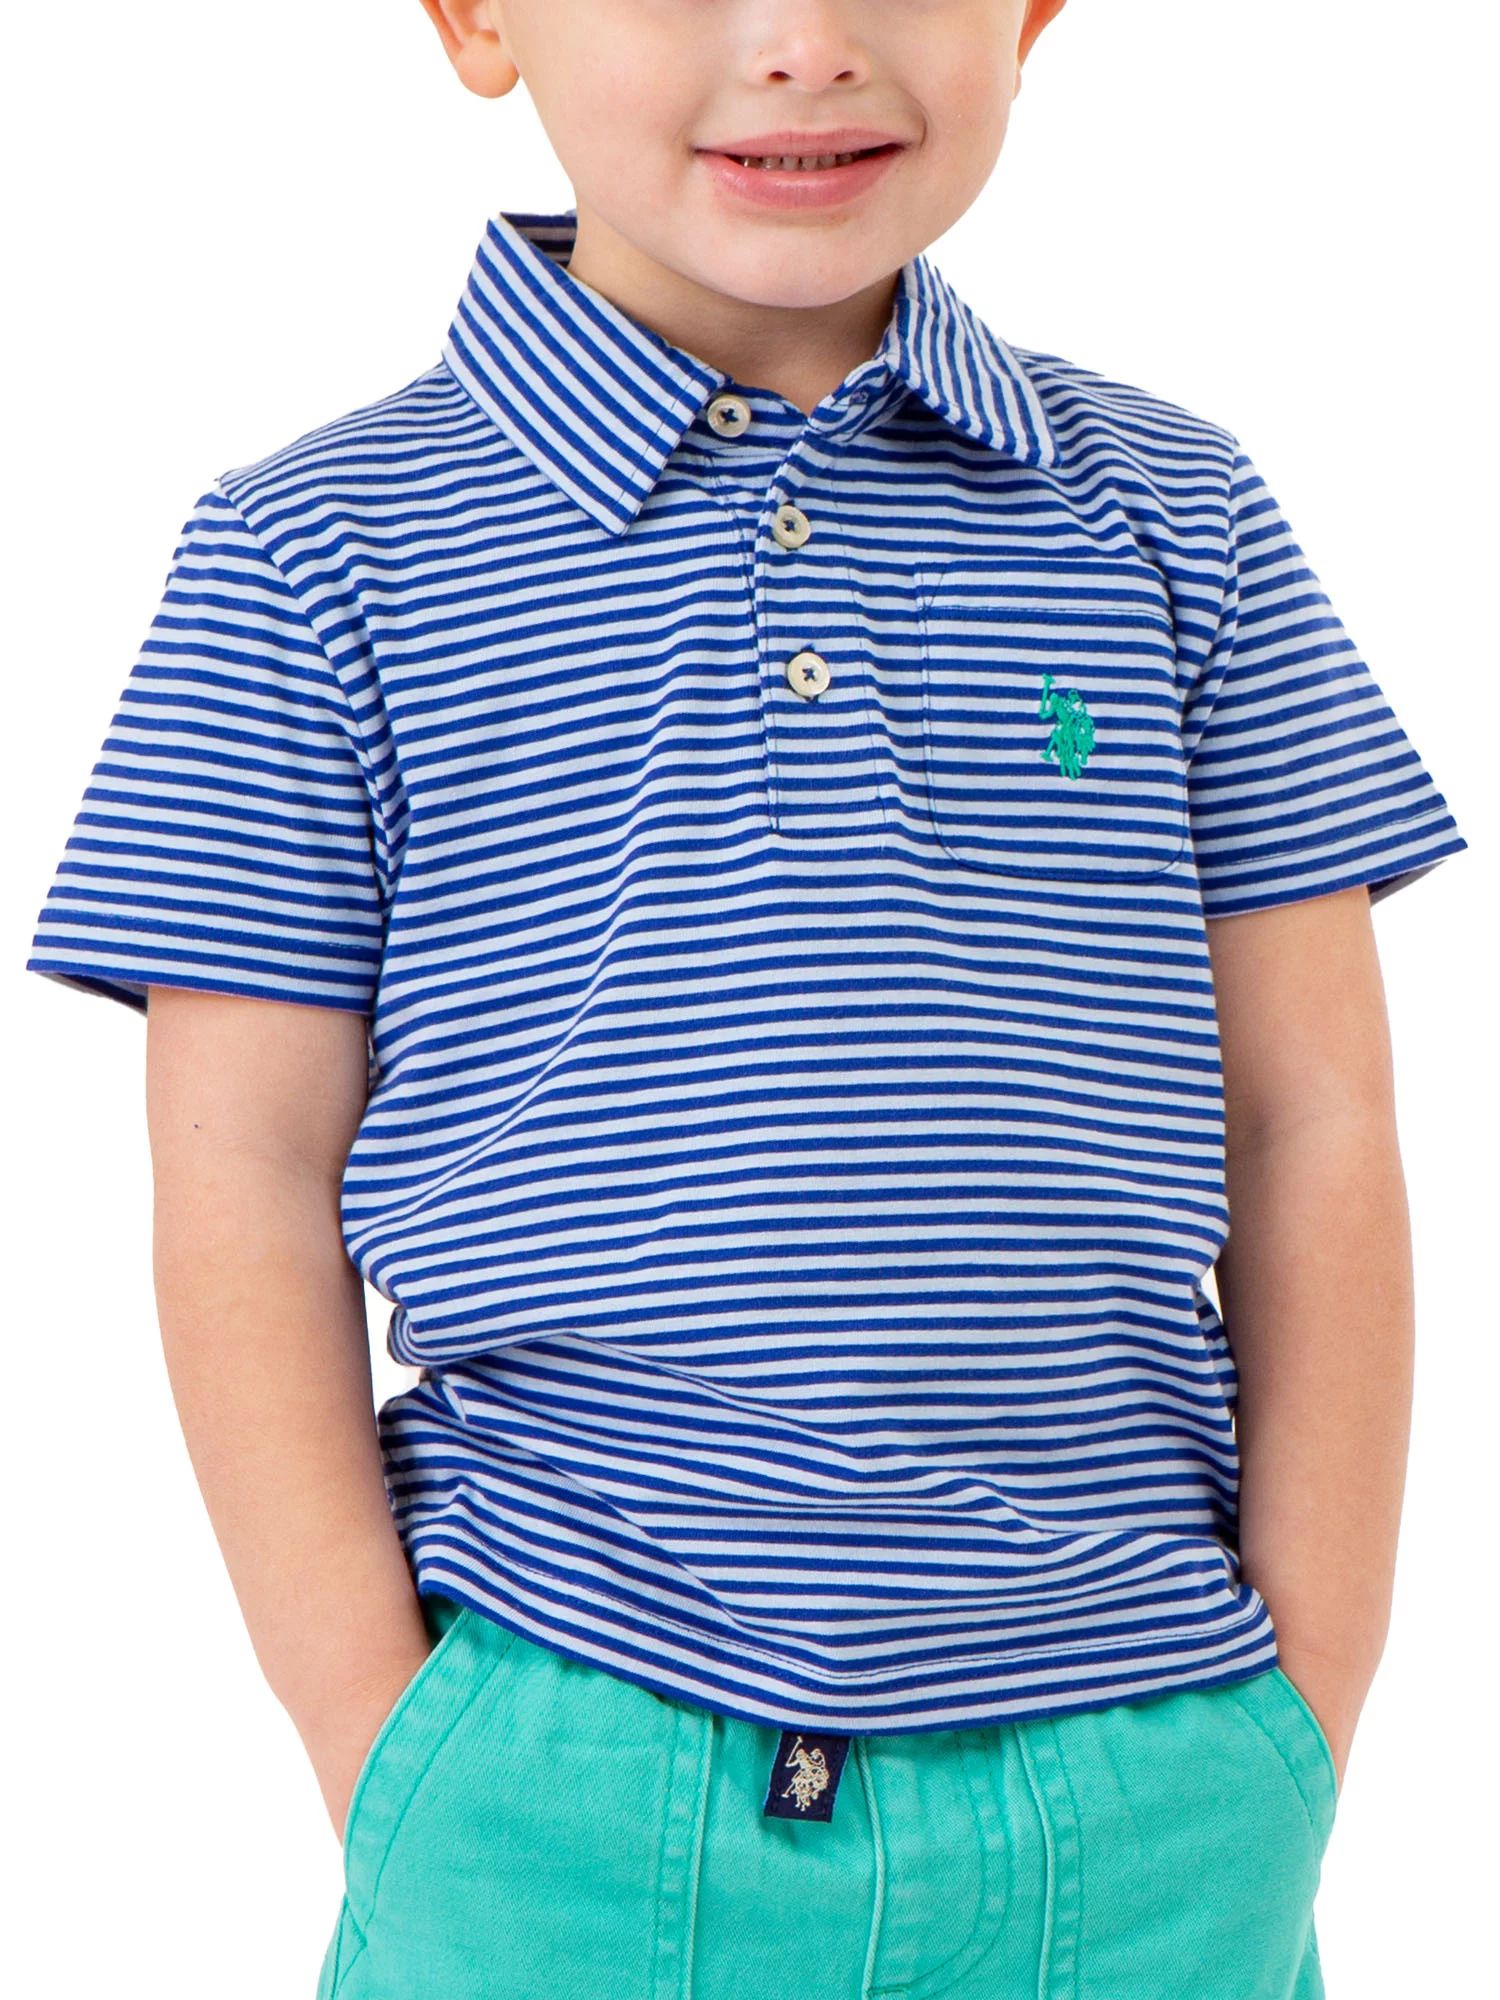 U.S. Polo Assn. Toddler Boy Stripe Polo T-Shirt, Sizes 2T-5T | Walmart (US)